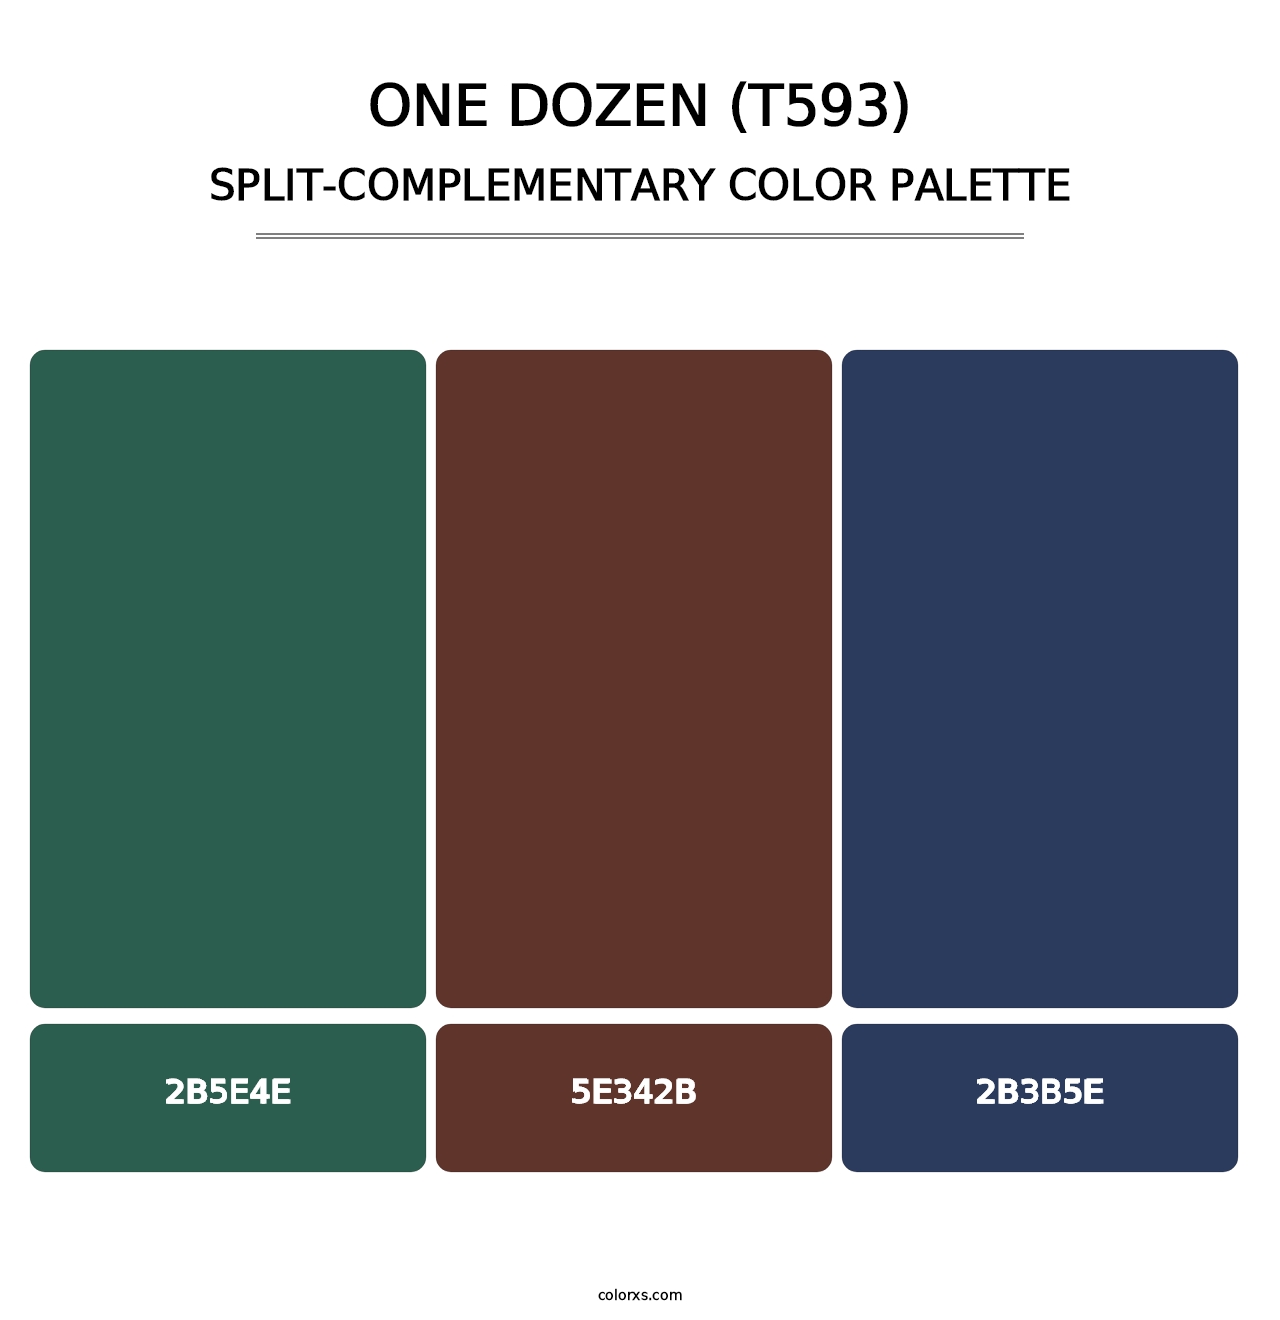 One Dozen (T593) - Split-Complementary Color Palette